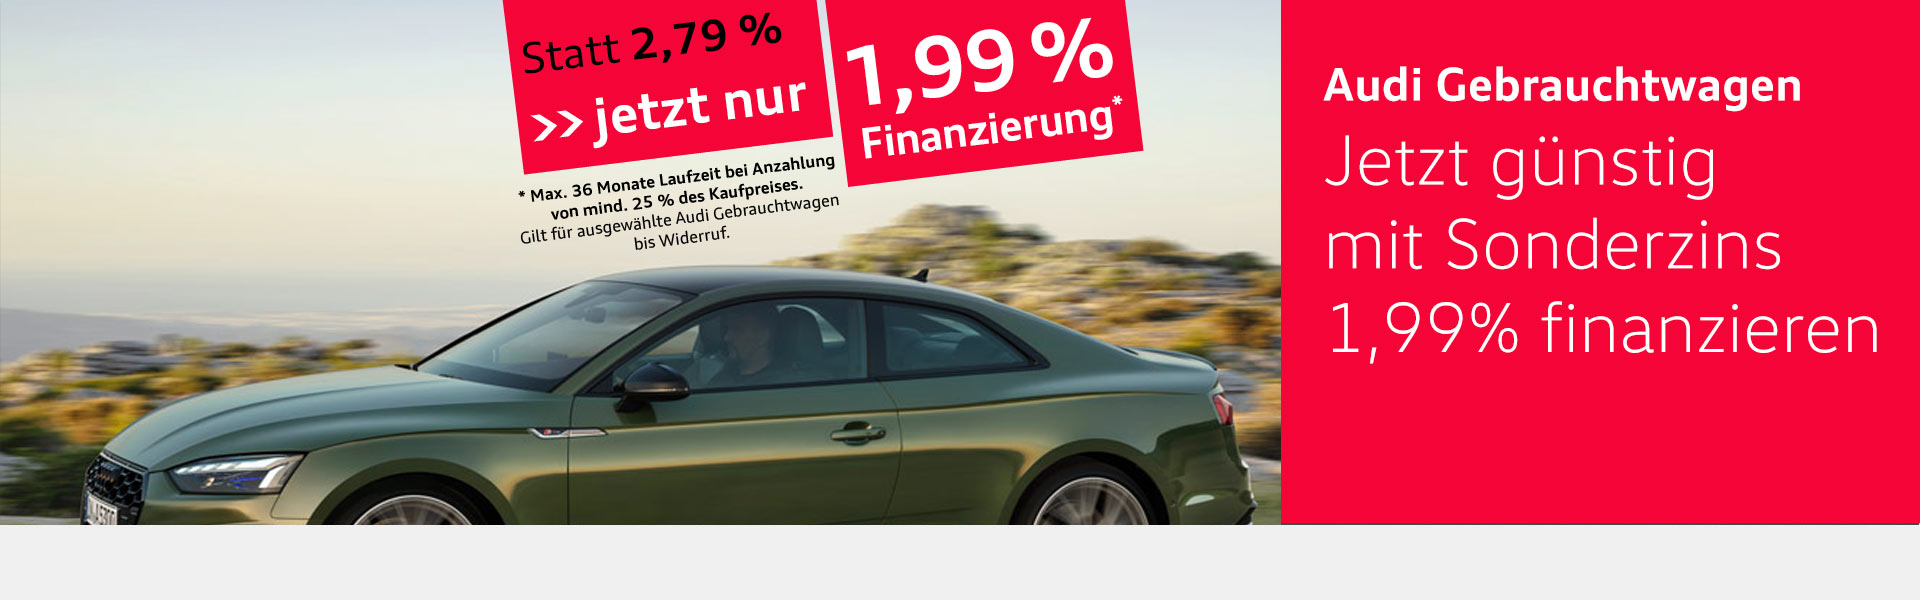 Audi Gebrauchtwagenfinanzierung 1,99%